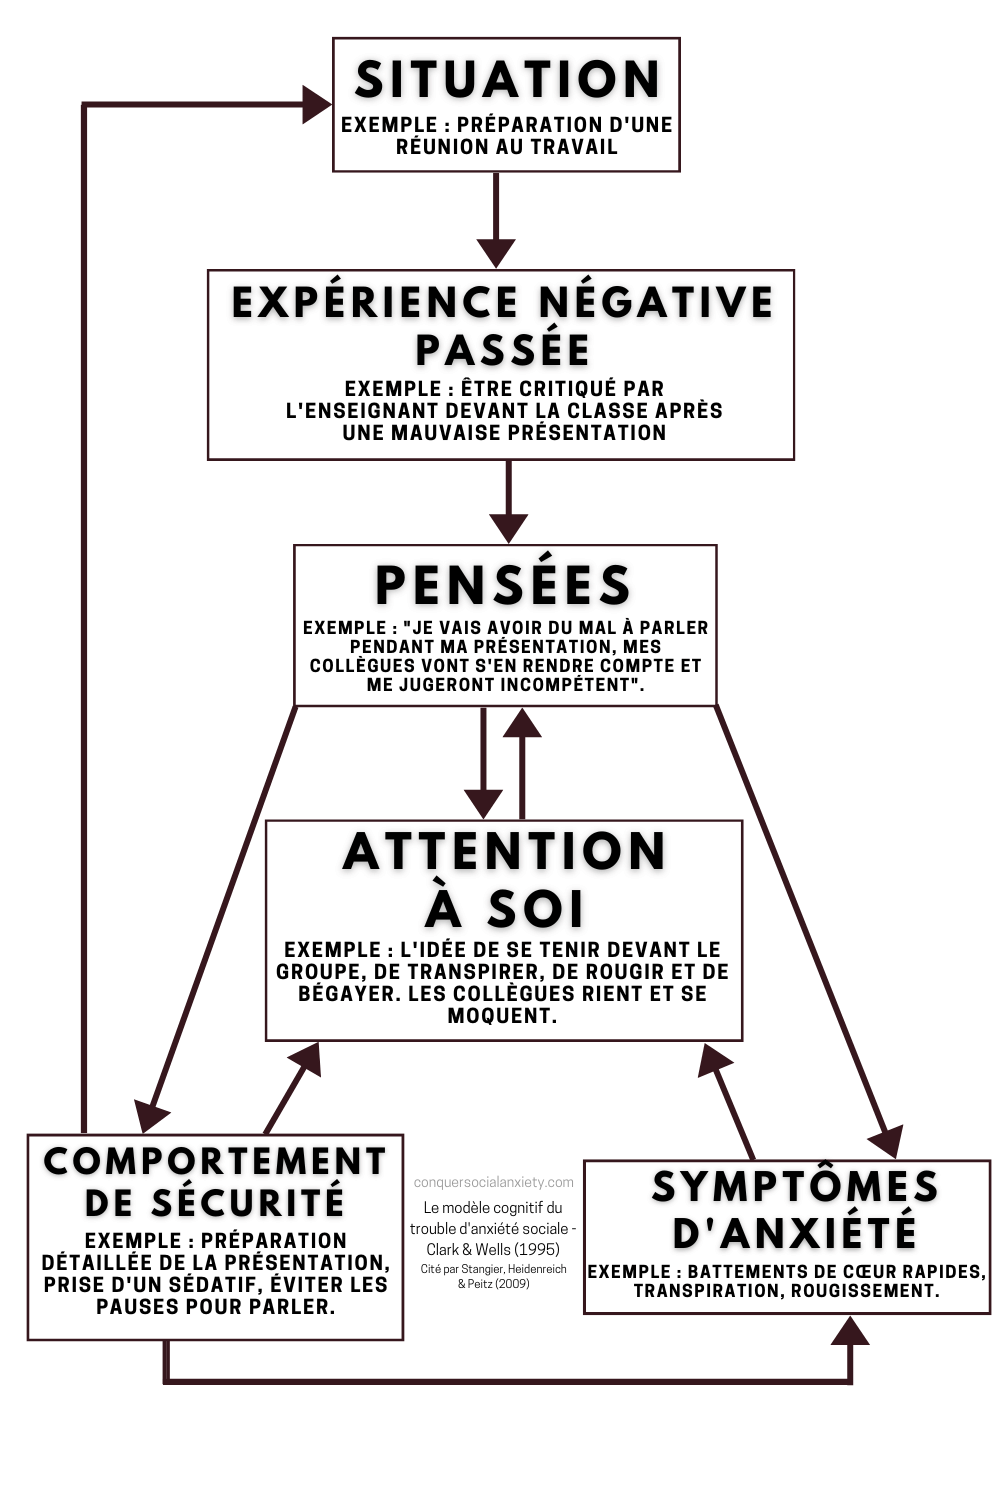 Le modèle cognitif du trouble d'anxiété sociale de Clark et Wells (1995).